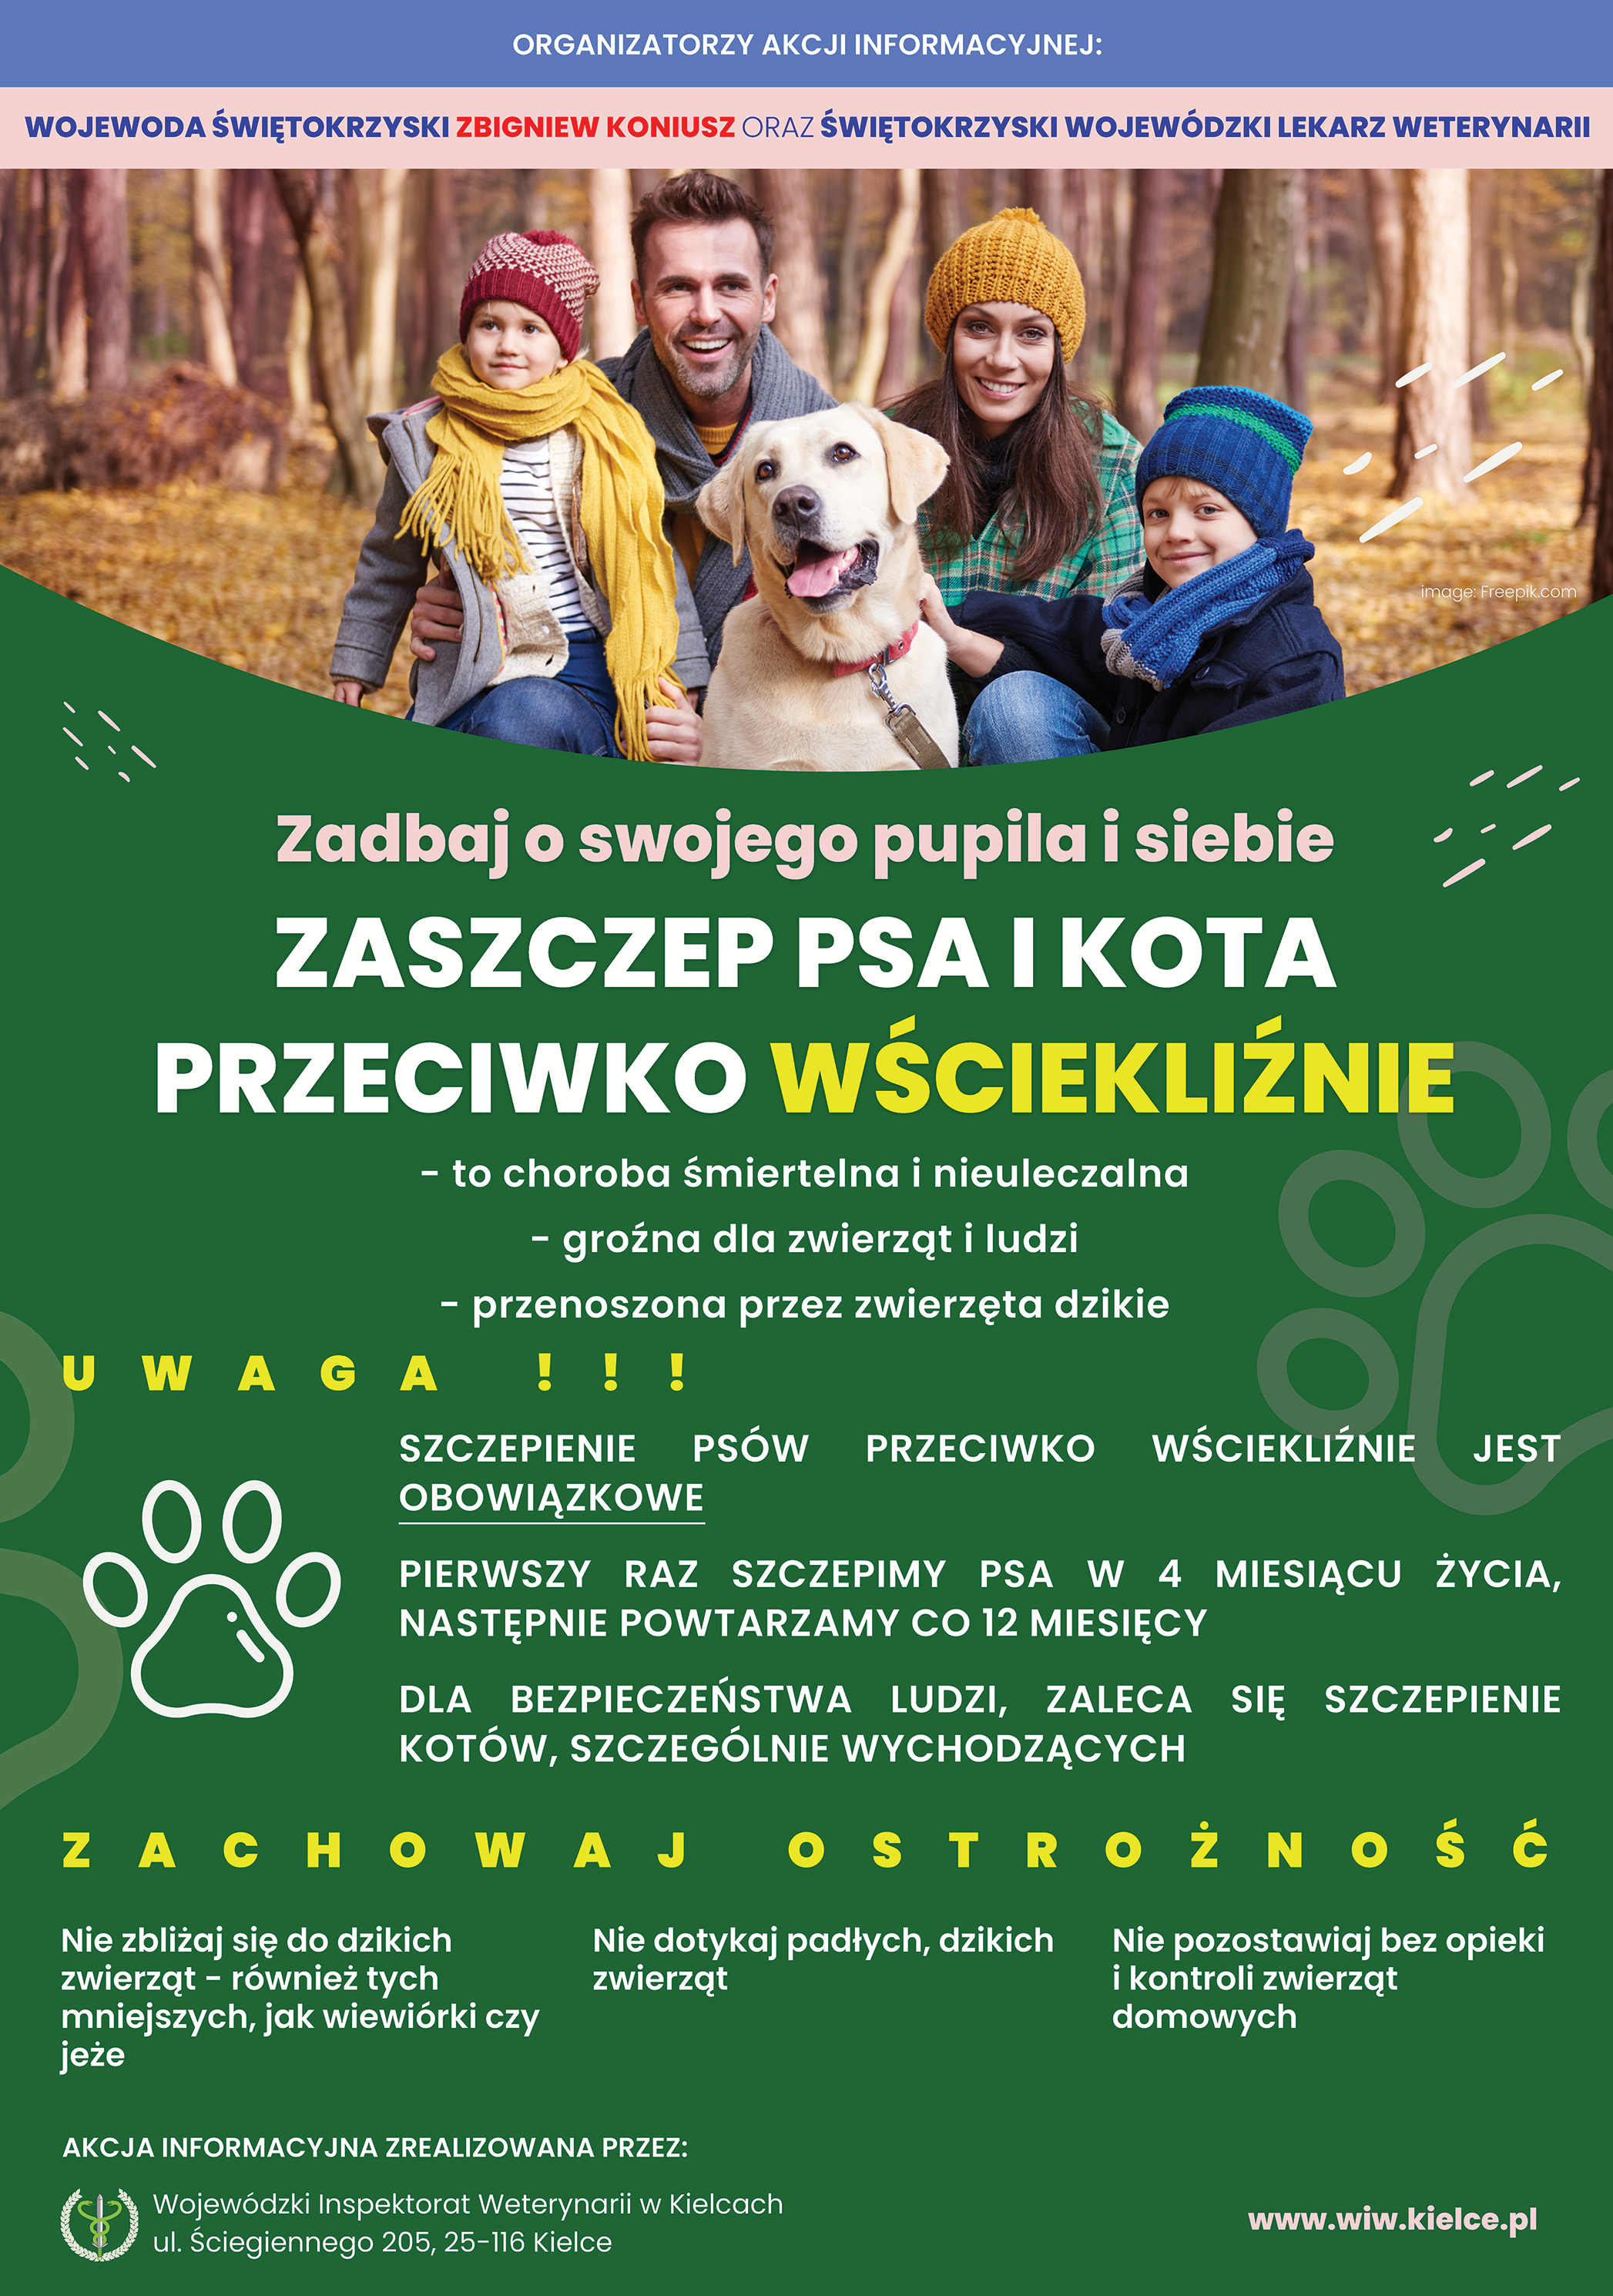 Plakat informacyjny: Świętokrzyski Wojewódzki Lekarz Weterynarii apeluje o regularne szczepienia psów i kotów przeciwko wściekliźnie które jest jedynym skutecznym sposobem zapobiegania wystąpieniu i rozprzestrzenianiu się wścieklizny.